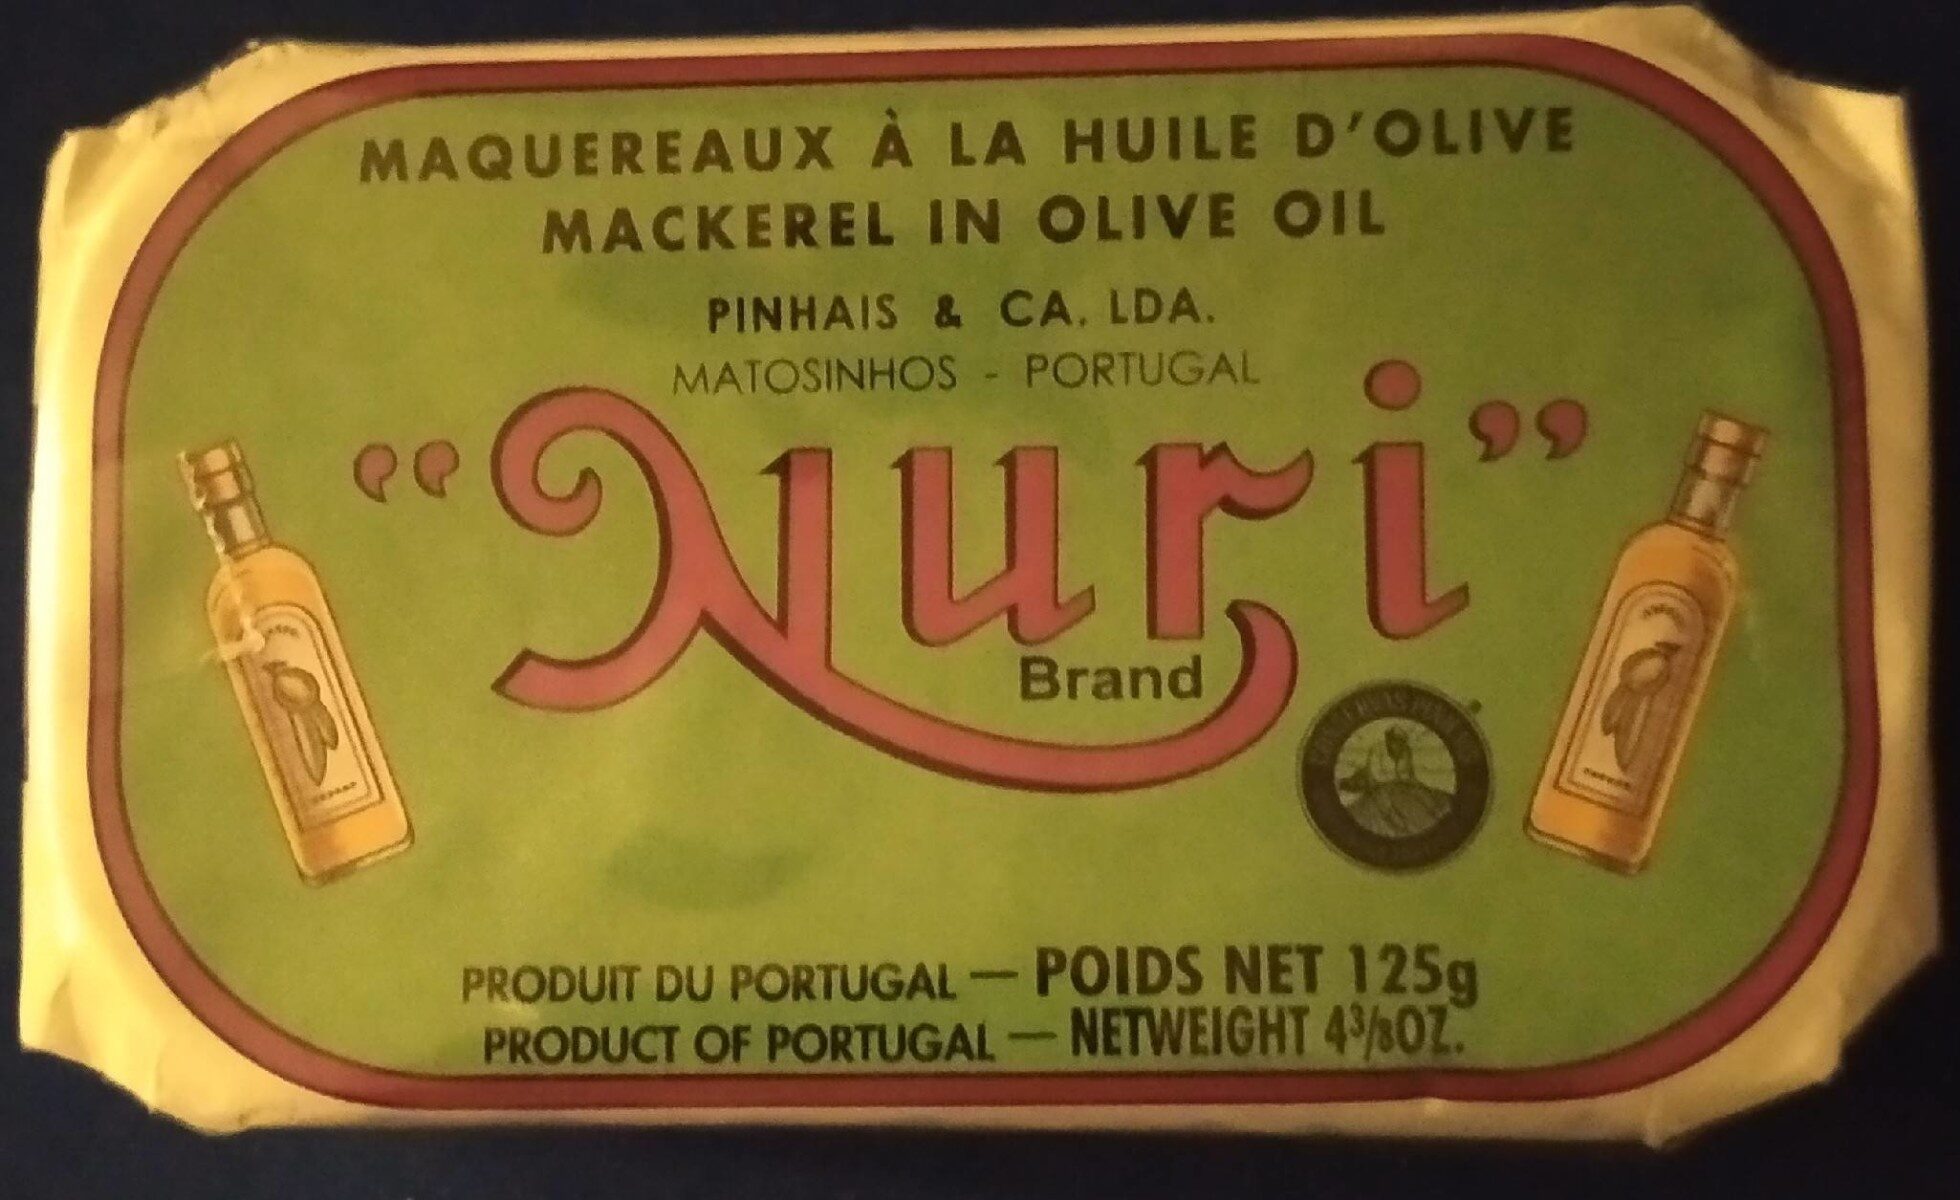 Maquereaux à l'huile d'olive - Product - fr